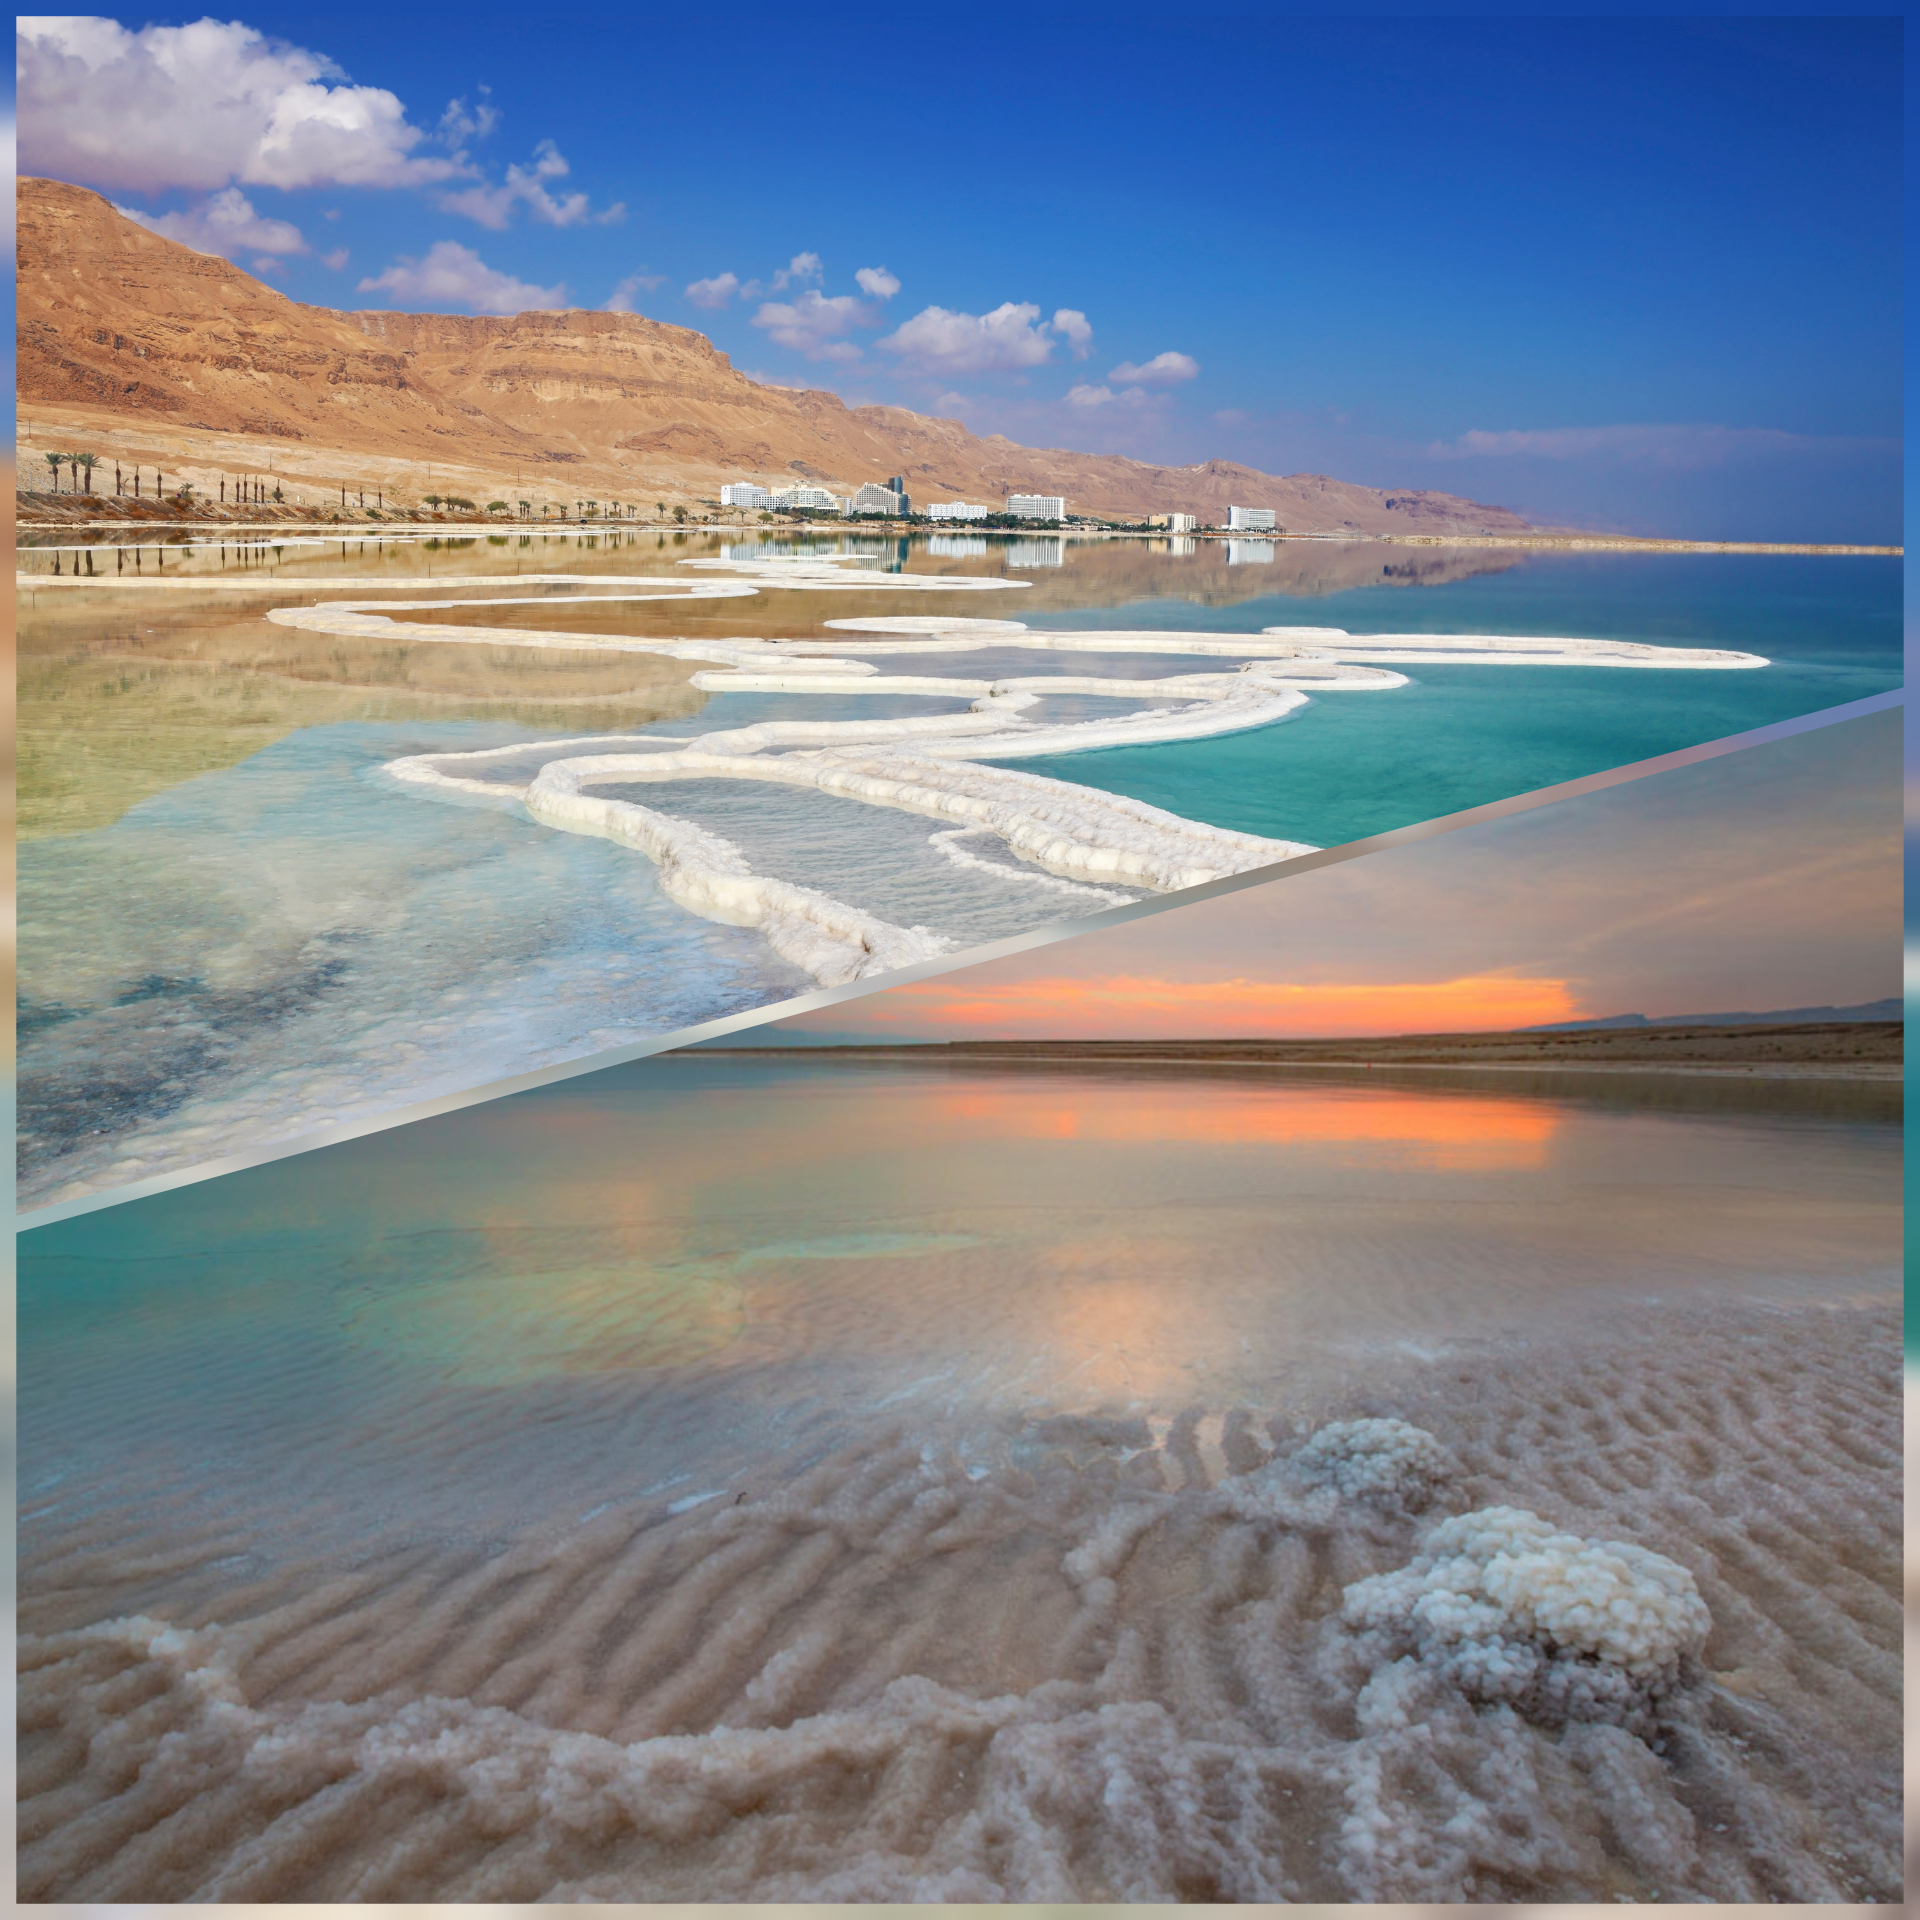 The Ultimate Dead Sea Travel Guide